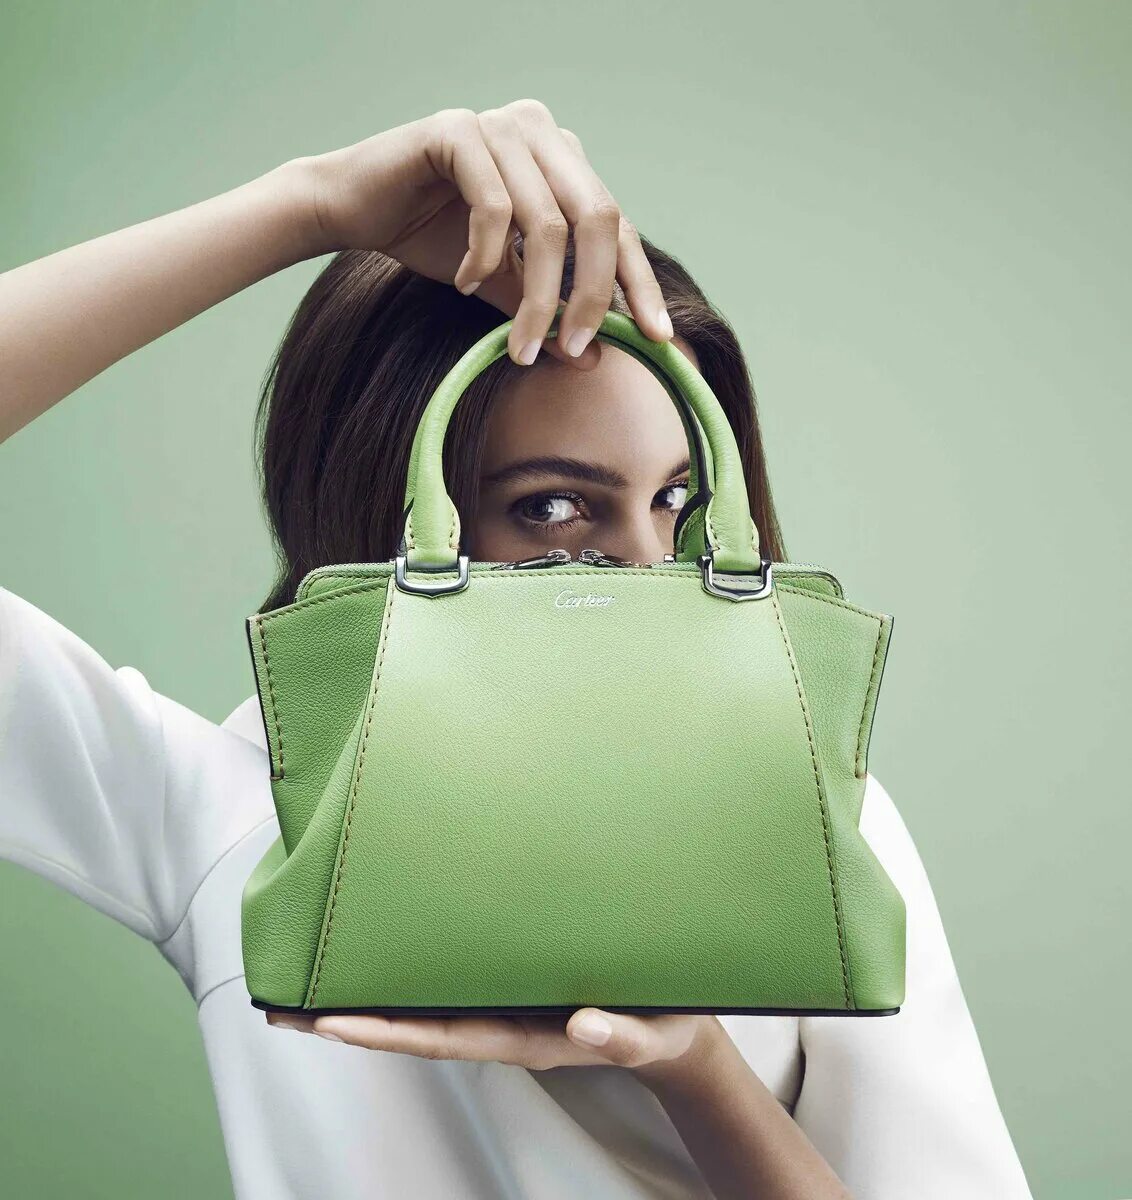 Сумки. Красивые сумки. Реклама сумок женских. Зелёная сумка женская. Show bags